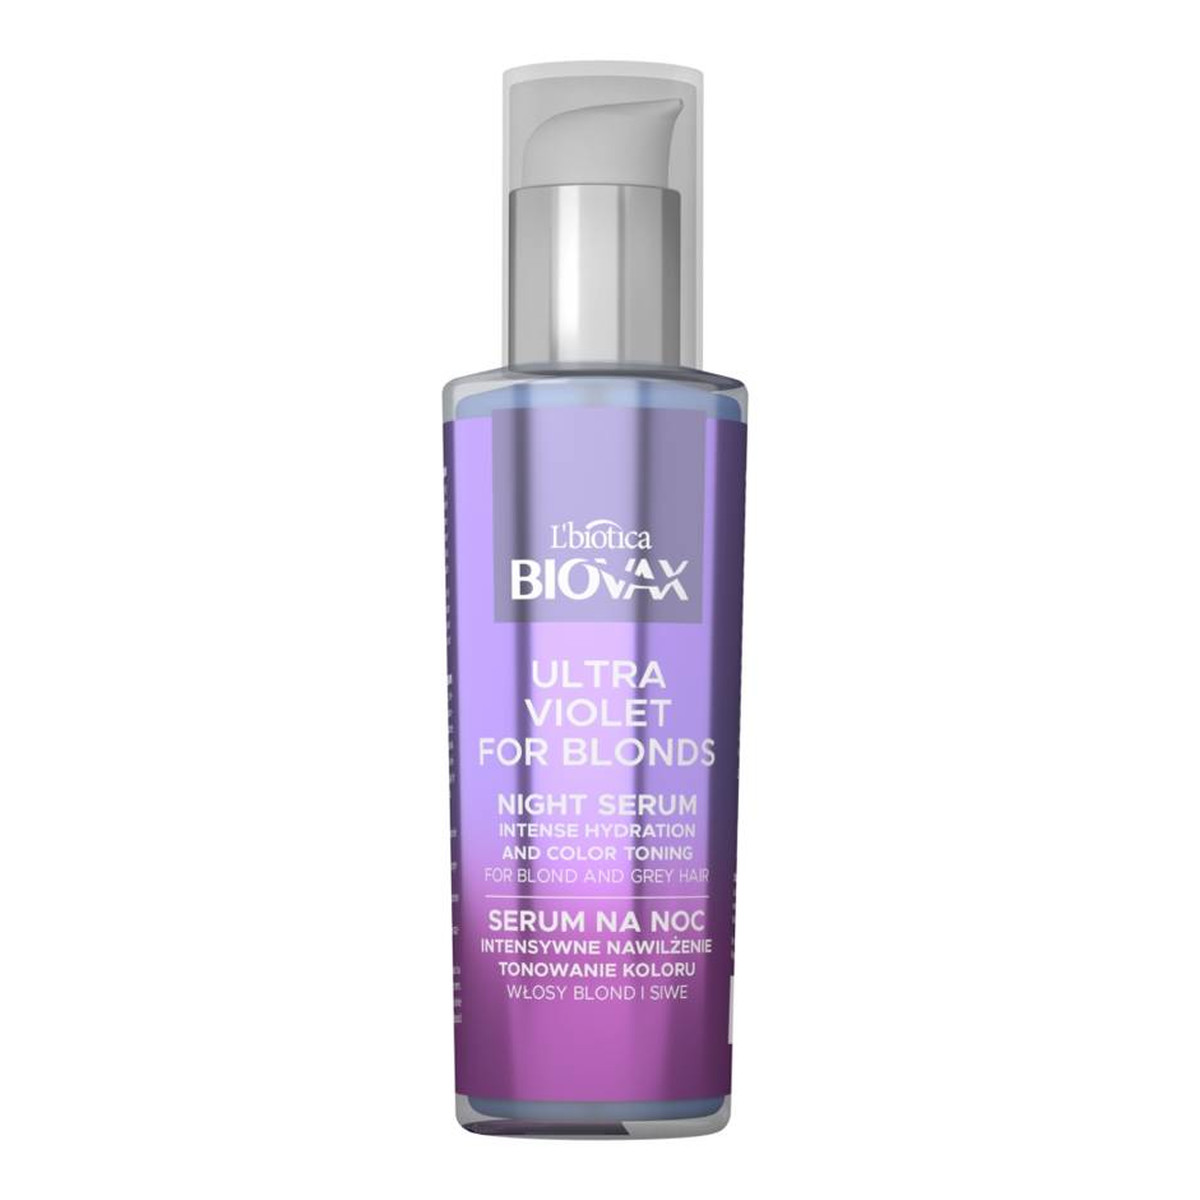 Biovax Ultra Violet for Blonds Serum na noc Intensywne Nawilżenie i Tonowanie Koloru do włosów blond i siwych 100ml